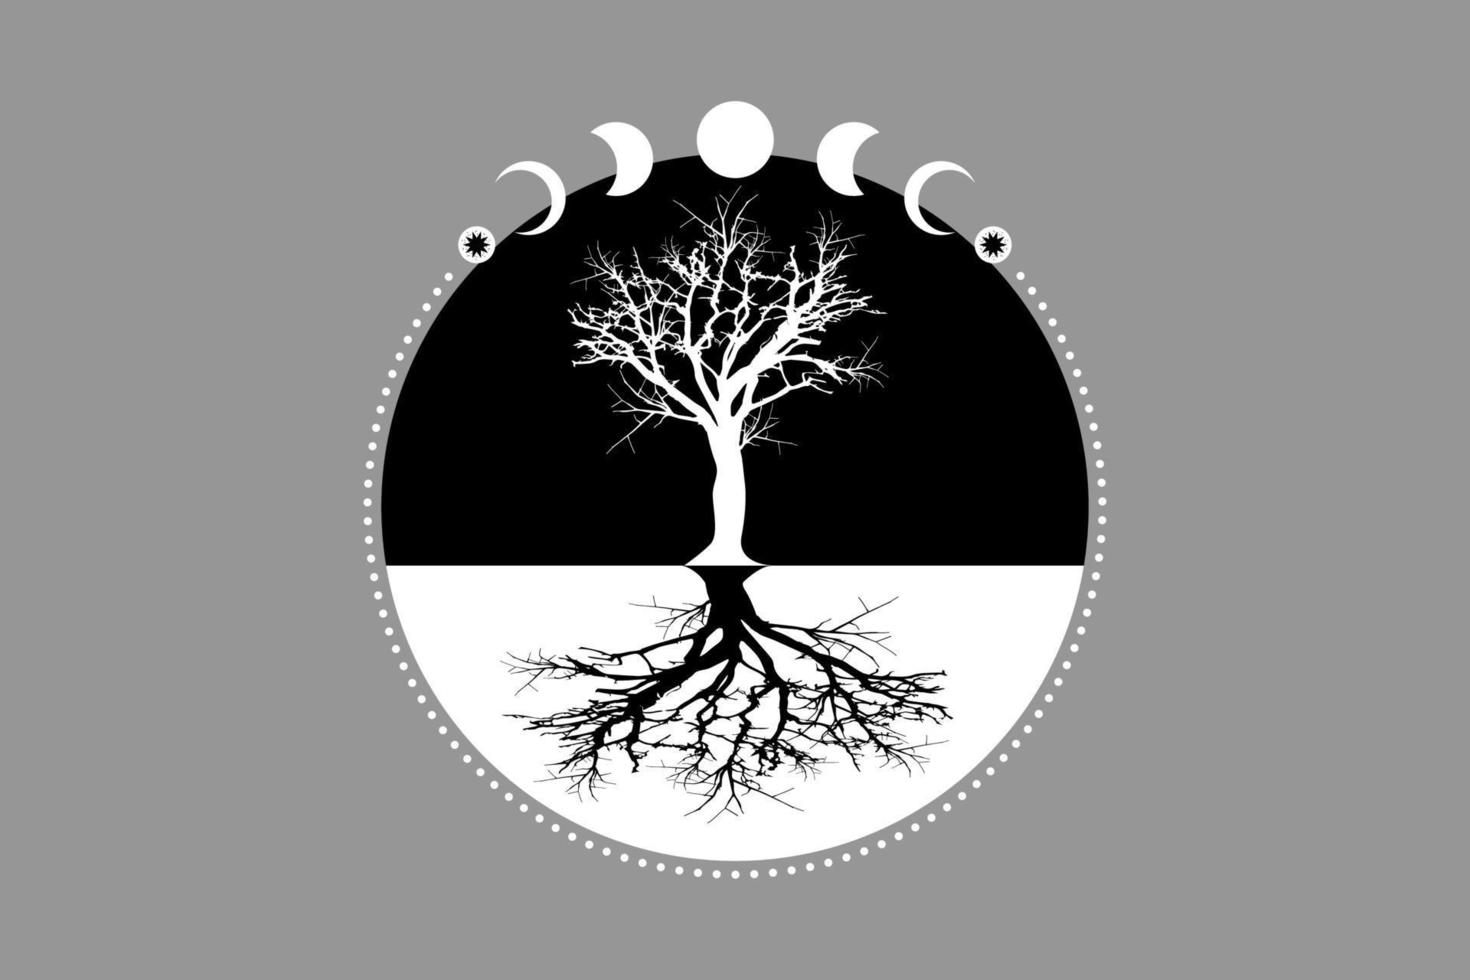 fases místicas da lua, árvore da vida, geometria sagrada. árvore e raízes. símbolo de deusa wiccan pagã de lua tripla, sinal de bandeira wicca de silhueta, círculo de energia, vetor de estilo boho isolado em fundo cinza